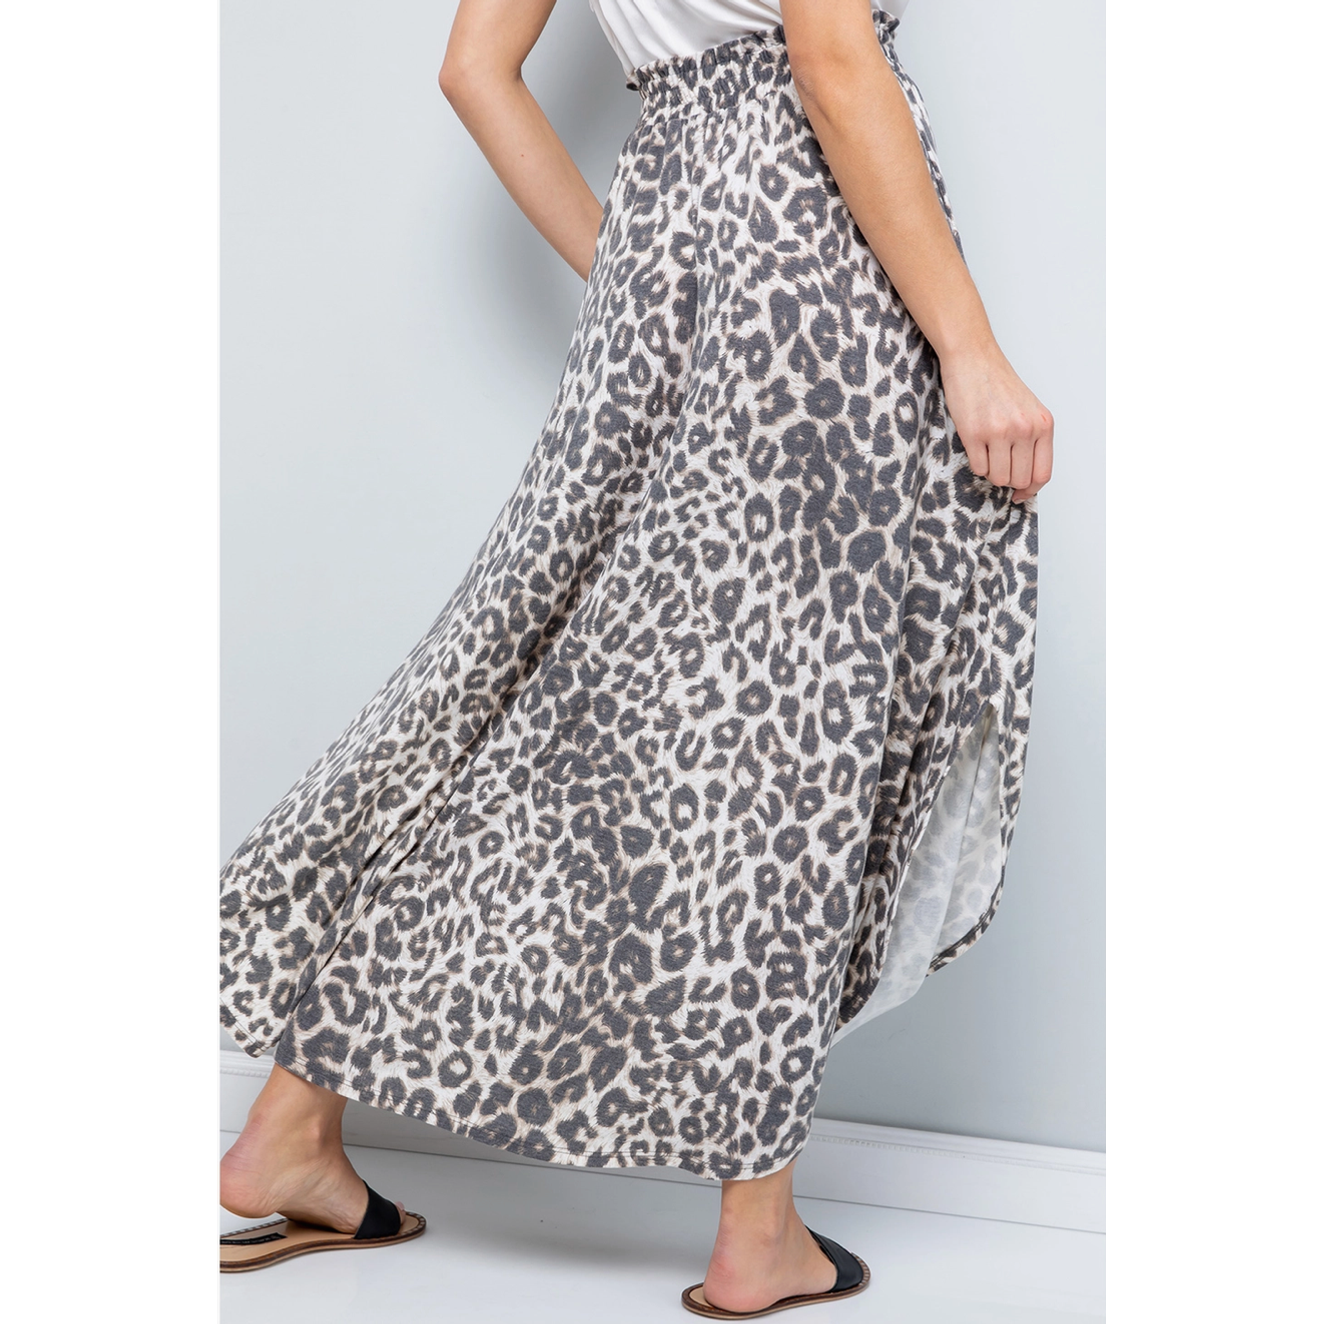 Leopard Maxi Skirt